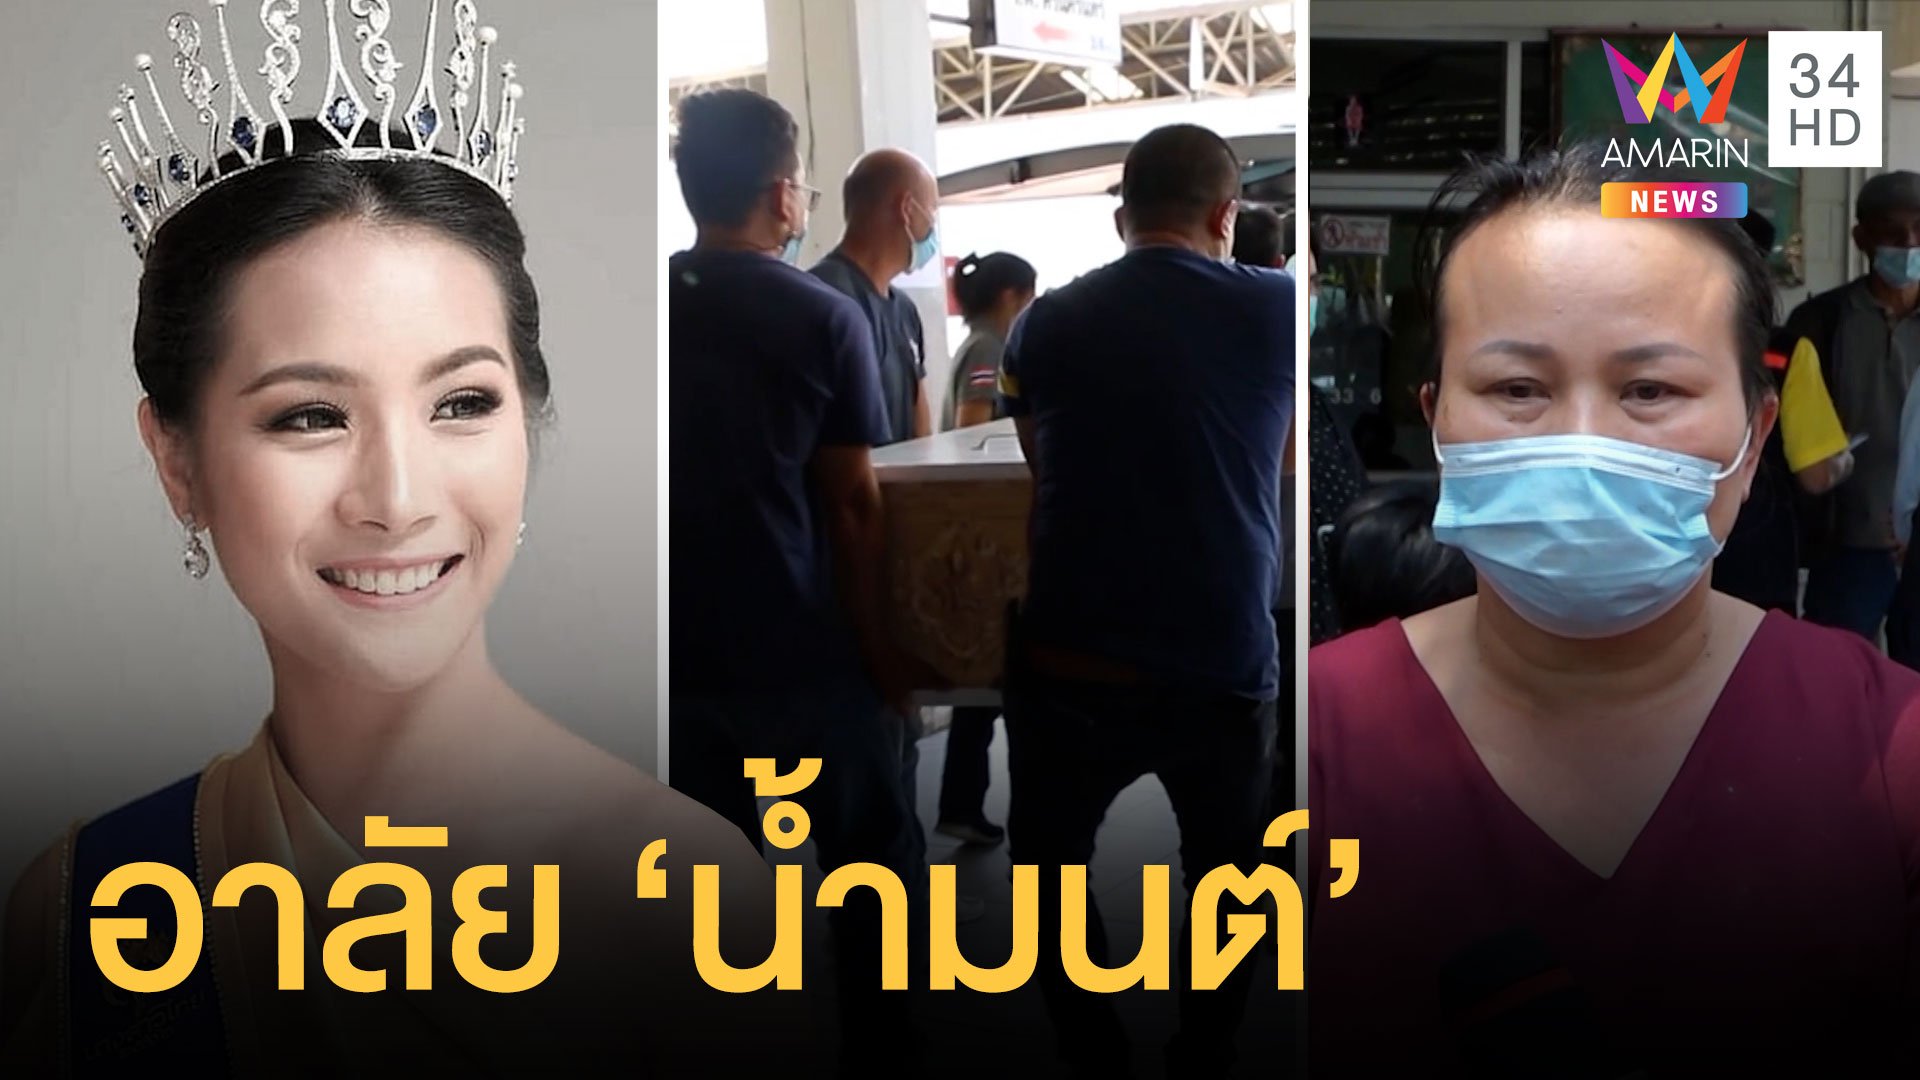 ญาติรับศพ "น้องน้ำมนต์" รองนางสาวไทยปี 62 แม่โพสต์สุดเศร้า | ข่าวอรุณอมรินทร์ | 17 ก.พ. 64 | AMARIN TVHD34